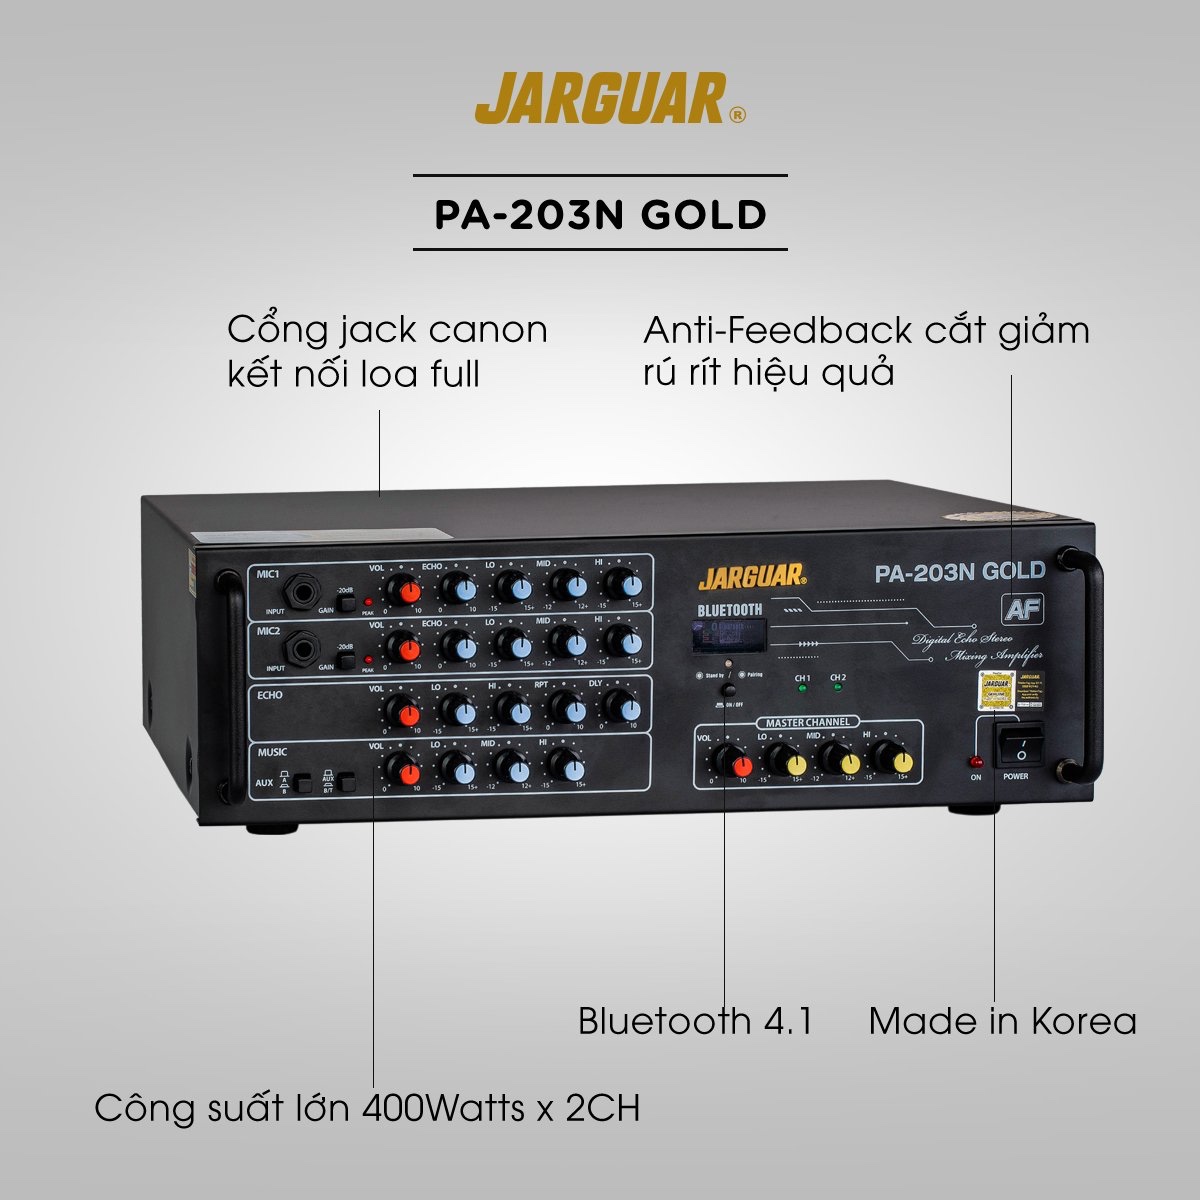 Ampli chống hú – Jarguar PA 203N Gold AF 2019